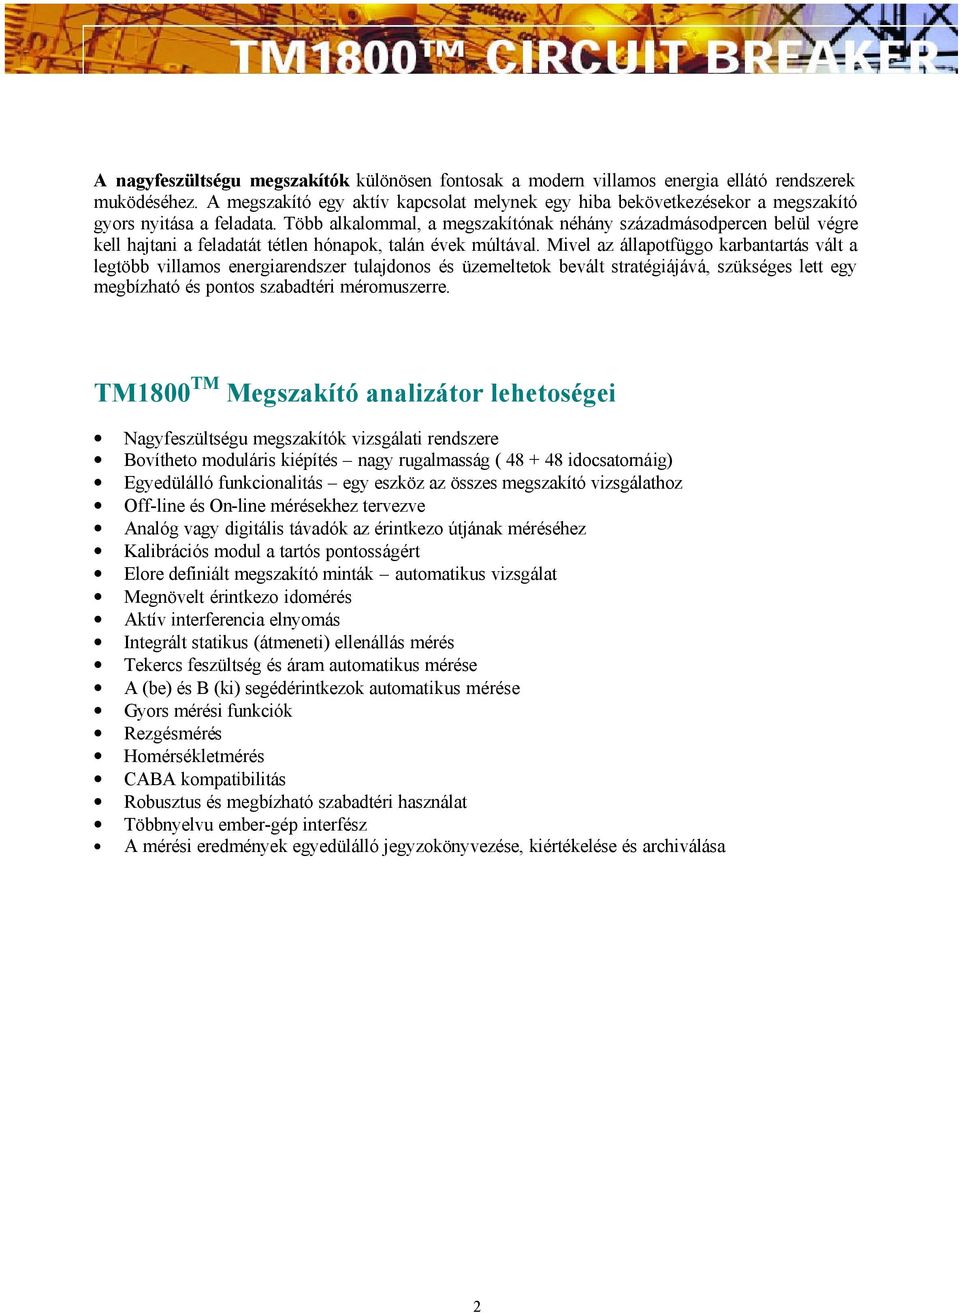 TM1800 Megszakító analizátor rendszer. MaxiCont. Mérnöki Szolgáltató és  Kereskedelmi Kft. - PDF Ingyenes letöltés